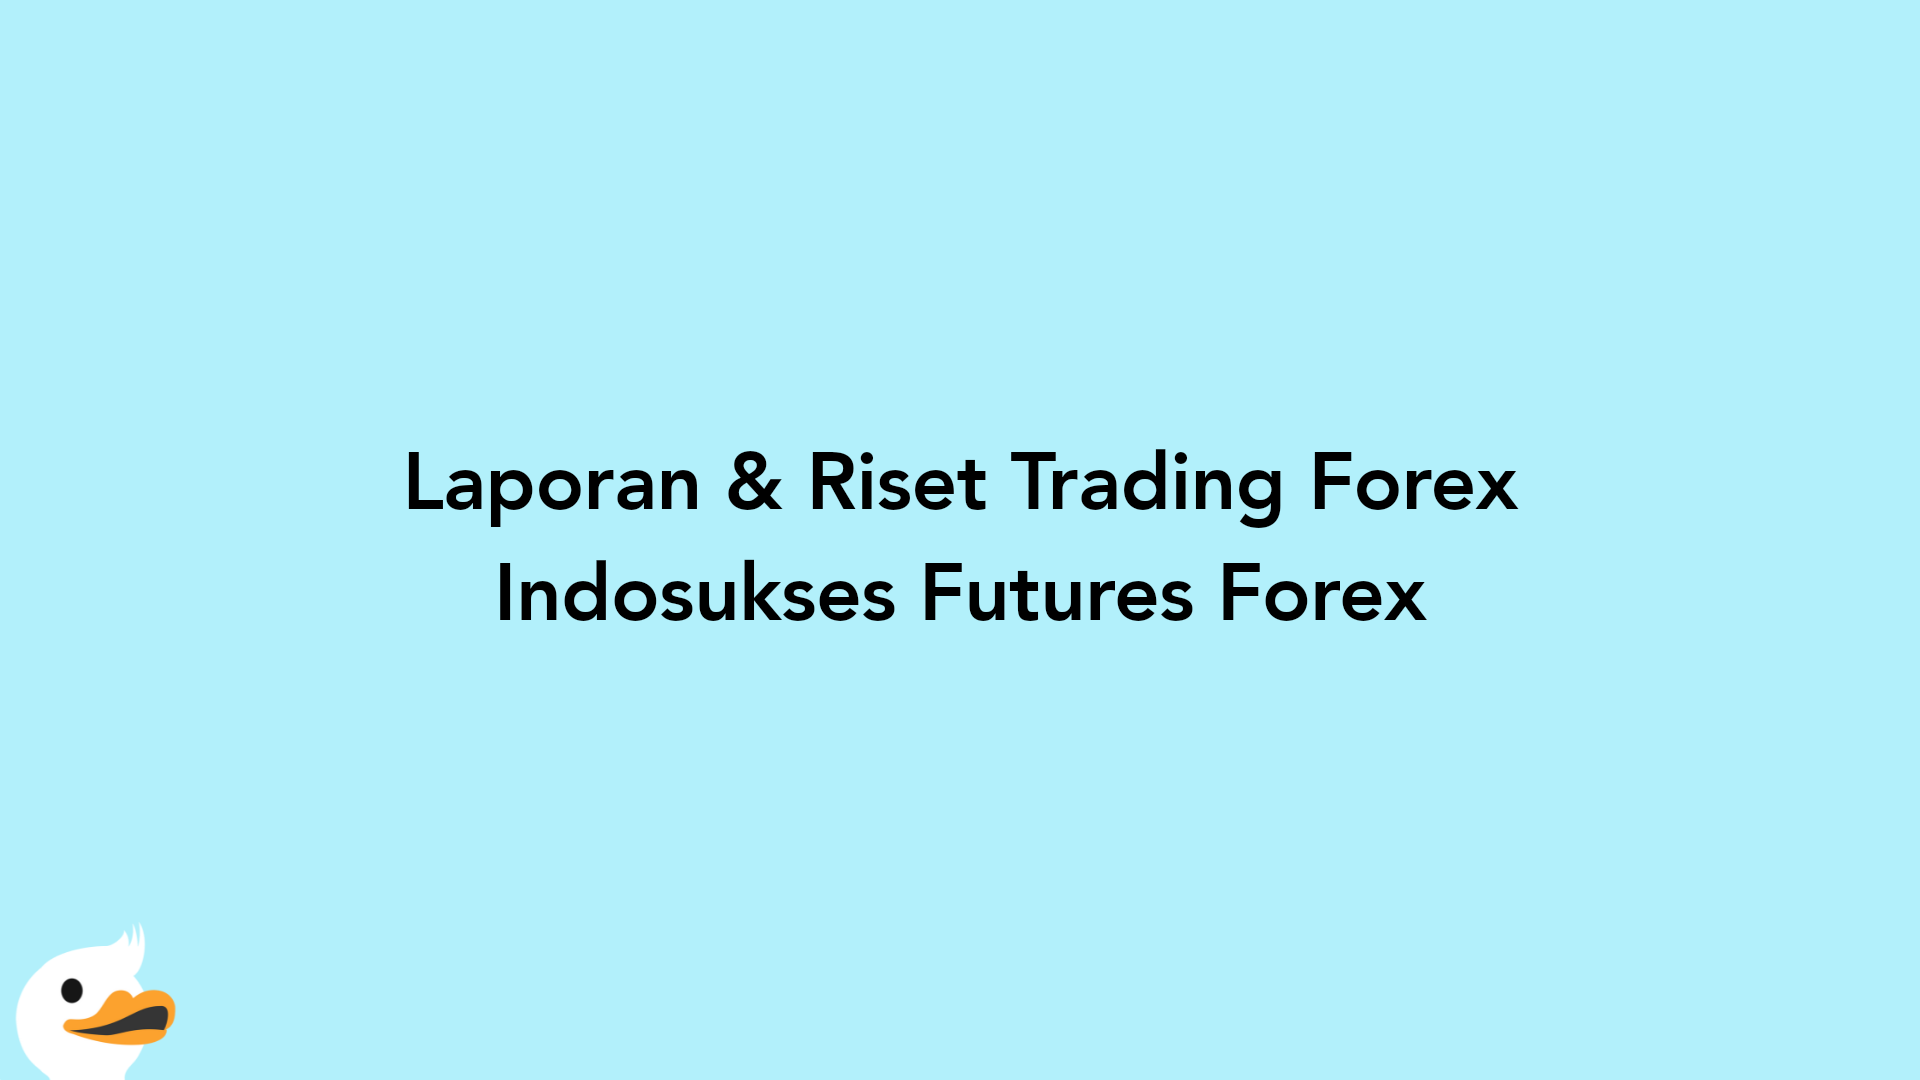 Laporan & Riset Trading Forex Indosukses Futures Forex